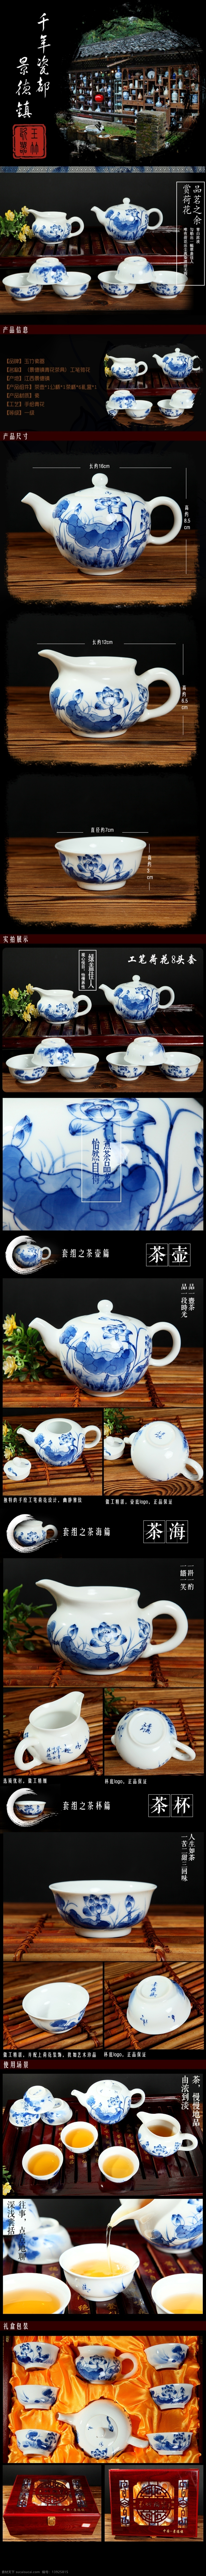 景德镇 茶具 详情 详情设计 手绘 青花 八 件套 原创设计 原创淘宝设计